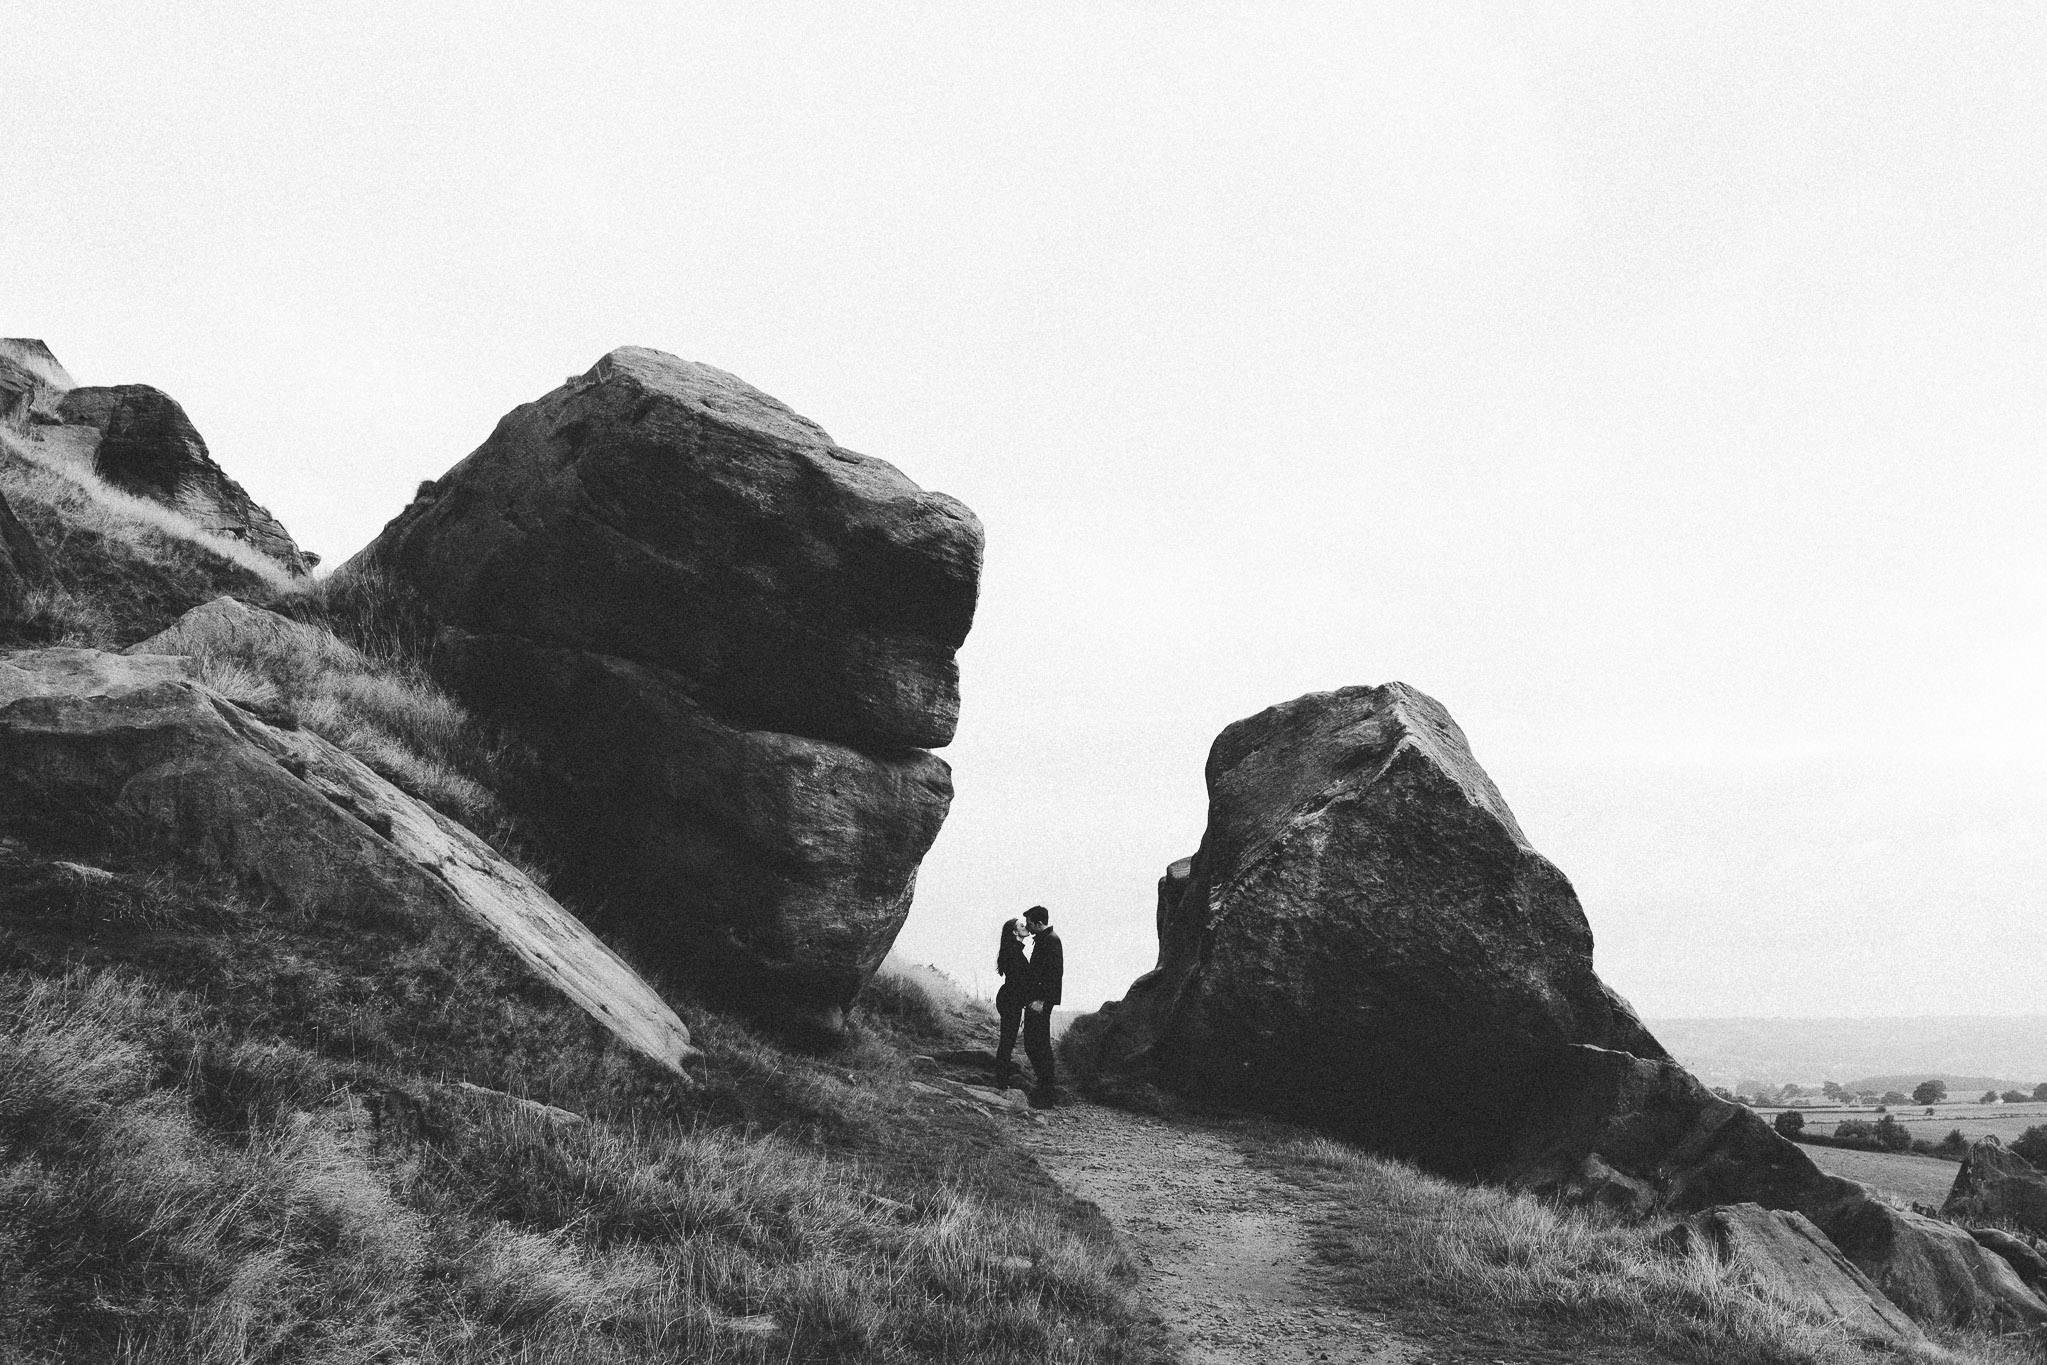 Almscliff Crag photo session